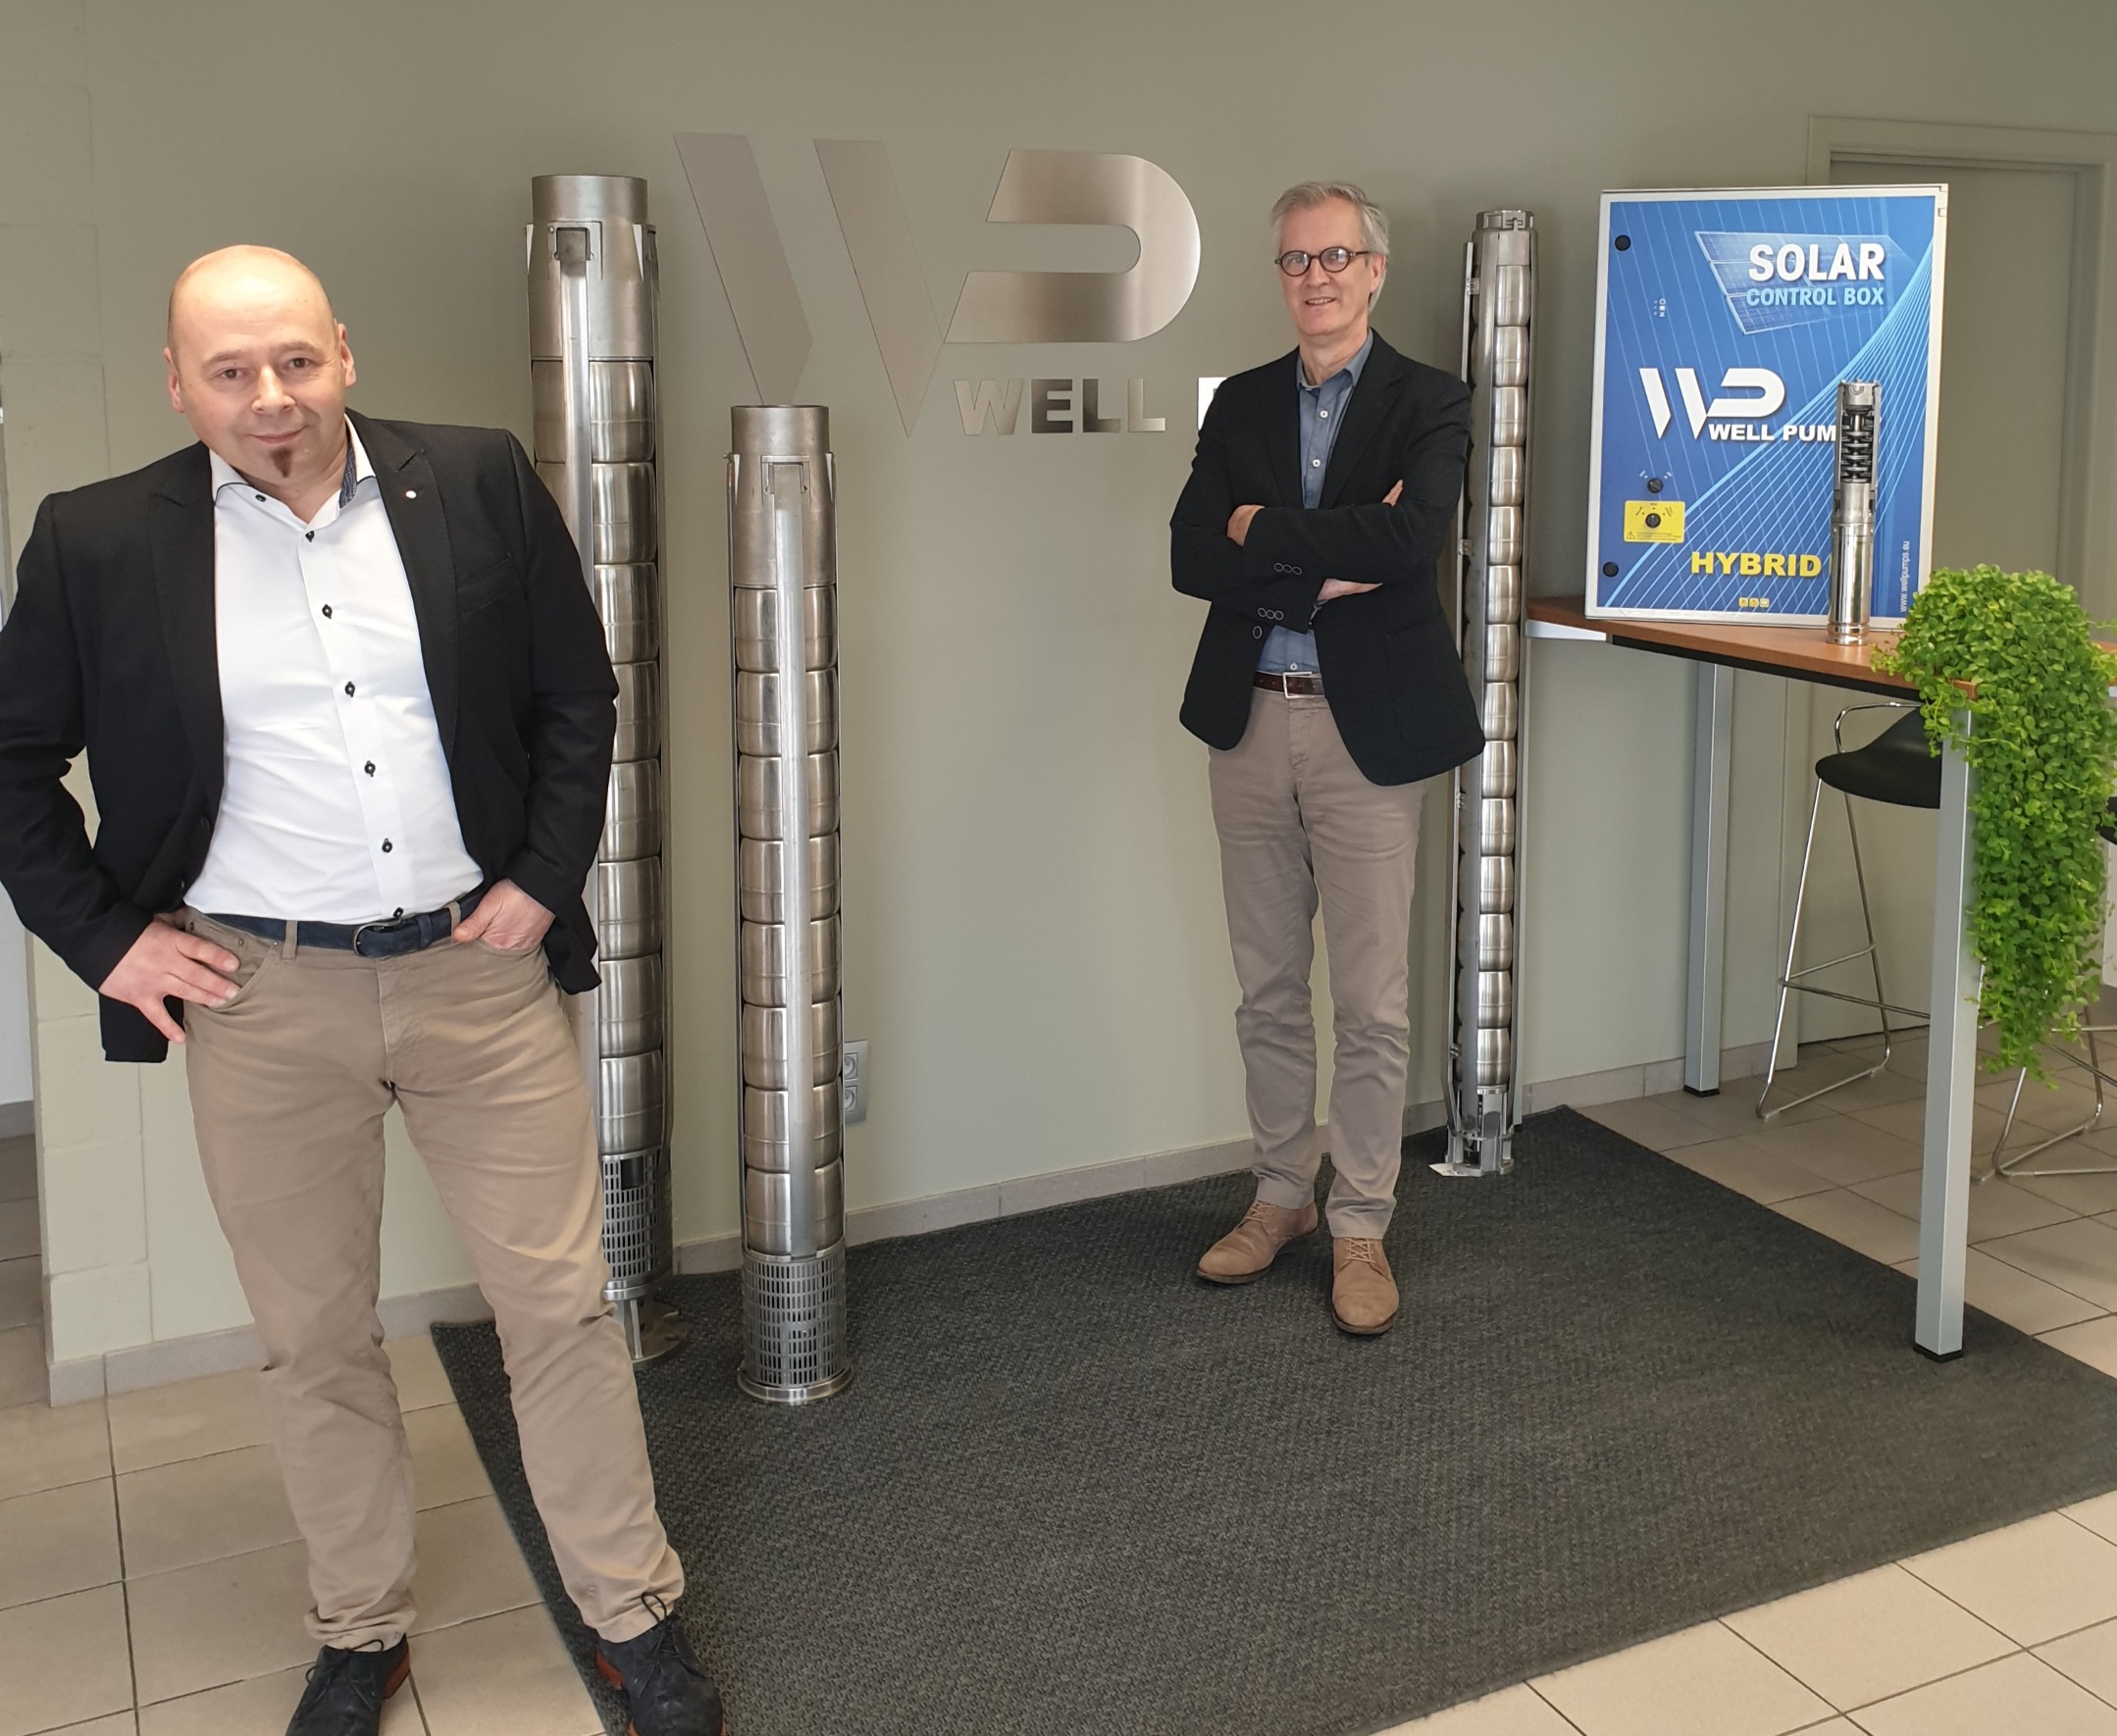 Reinier Teunissen (left), CEO of the WILG Group, and Well Pumps general manager Jan Van Genechten (right).